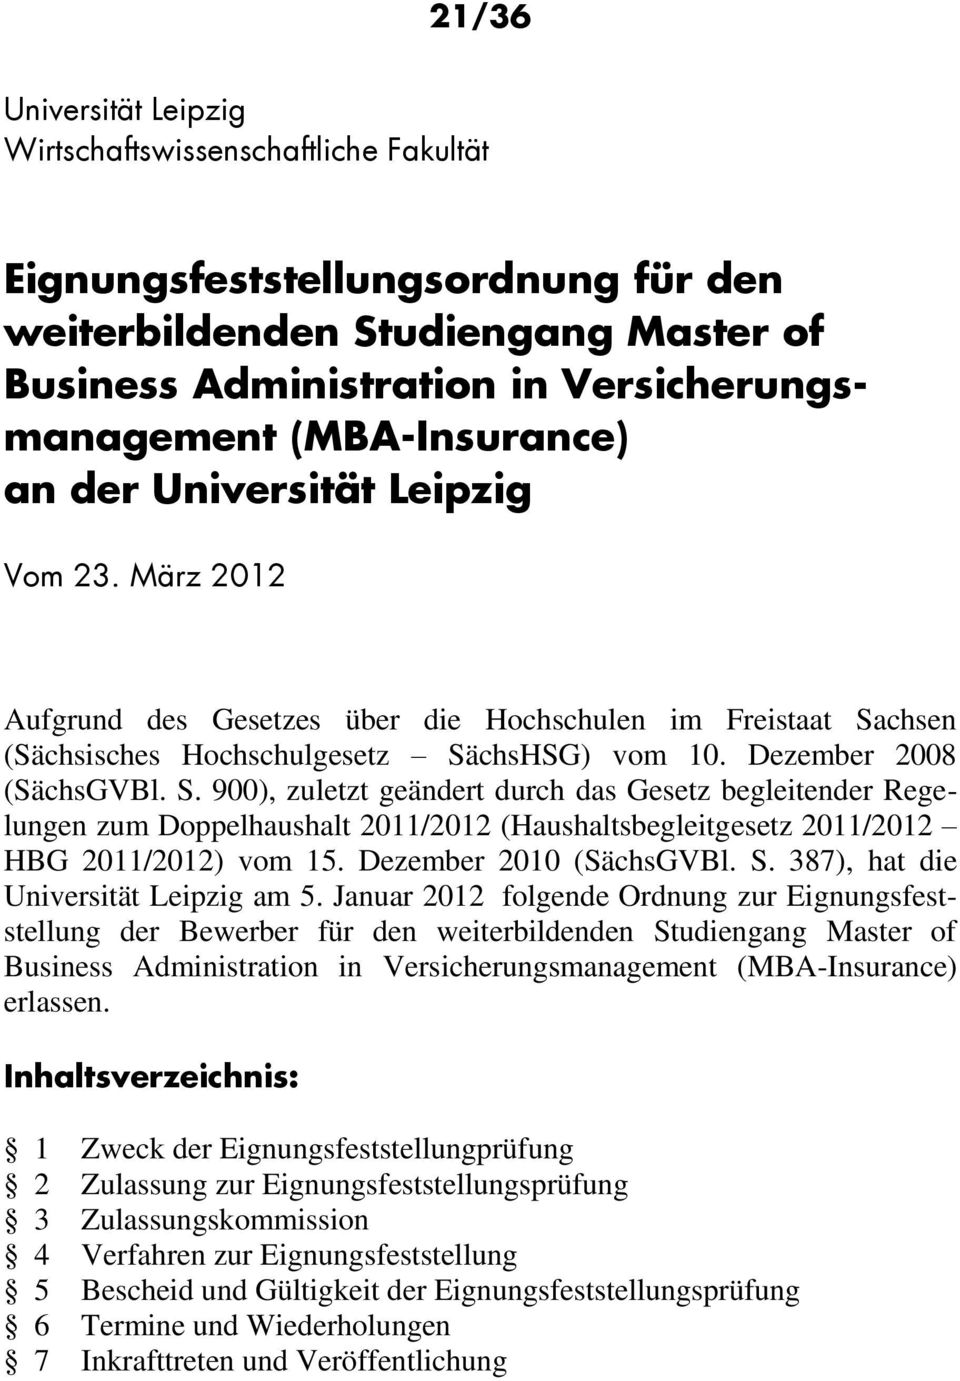 chsen (Sächsisches Hochschulgesetz SächsHSG) vom 10. Dezember 2008 (SächsGVBl. S. 900), zuletzt geändert durch das Gesetz begleitender Regelungen zum Doppelhaushalt 2011/2012 (Haushaltsbegleitgesetz 2011/2012 HBG 2011/2012) vom 15.